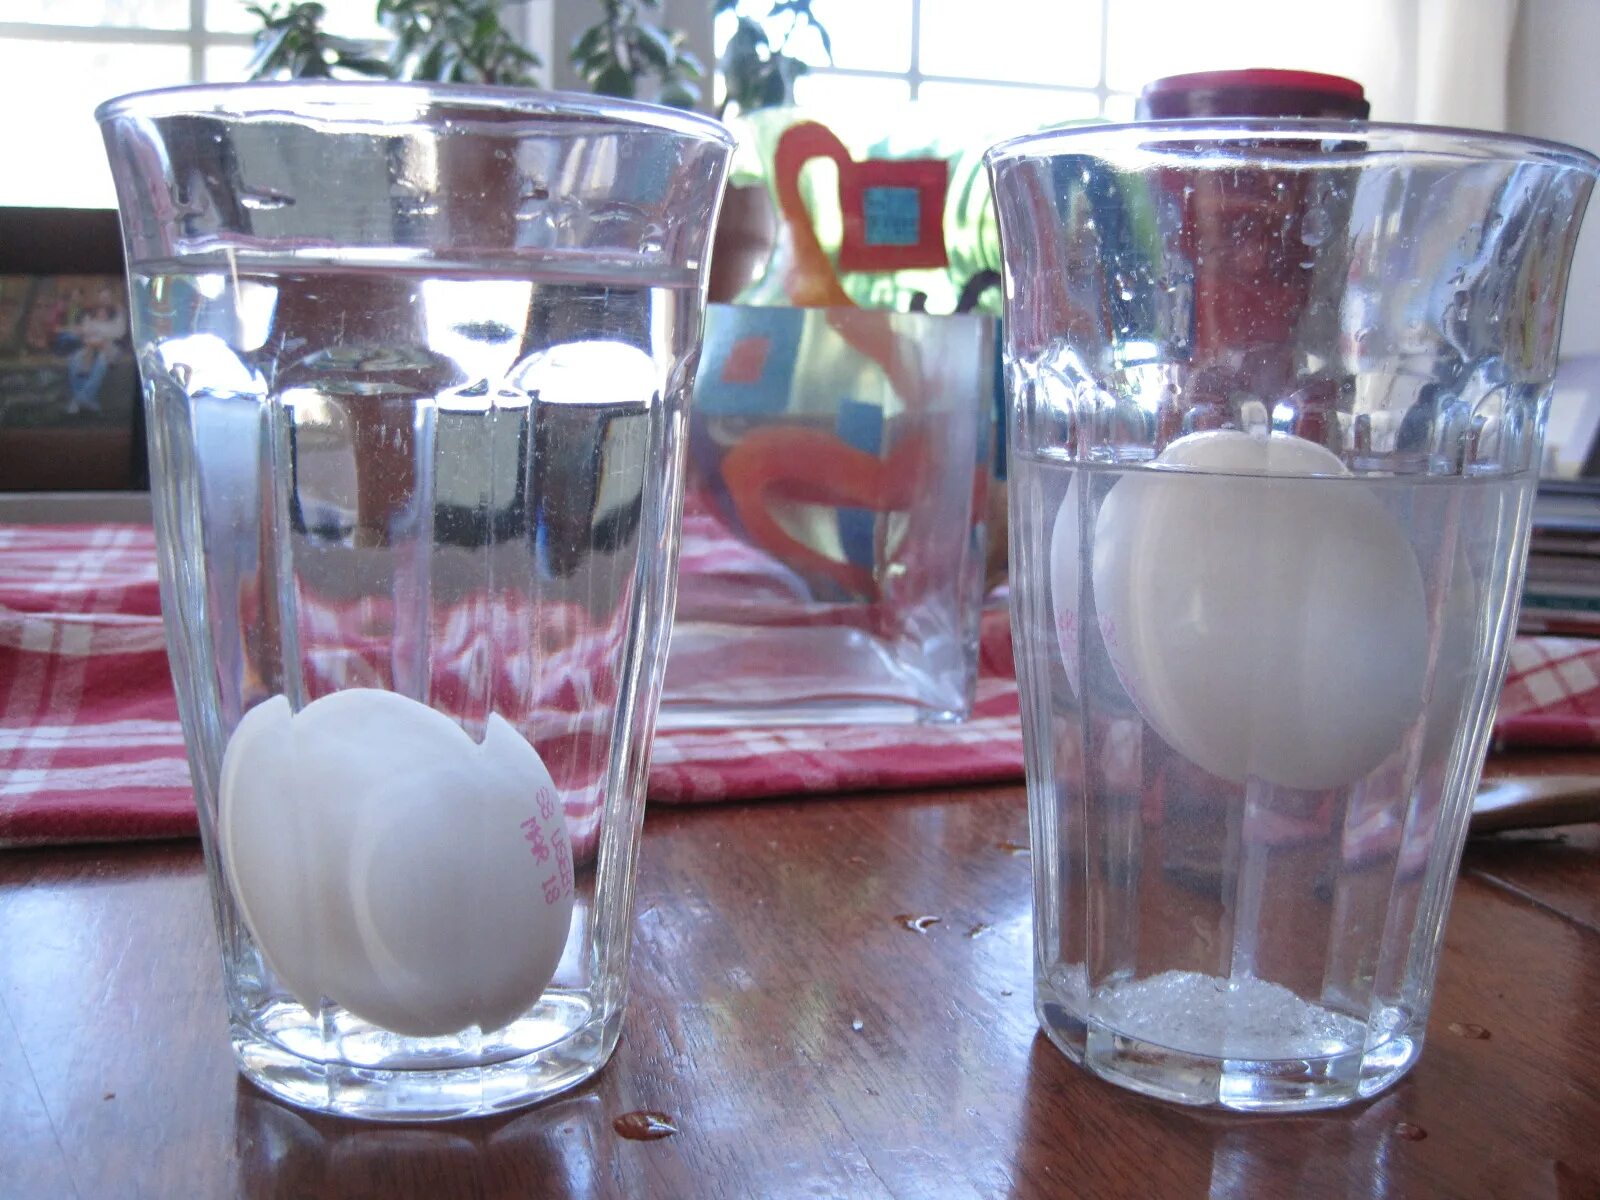 Опыт с яйцом и соленой водой. Опыты с яйцом. Опыт с водой и яйцом и солью. Эксперимент с яйцом и водой. Соленая вода курам